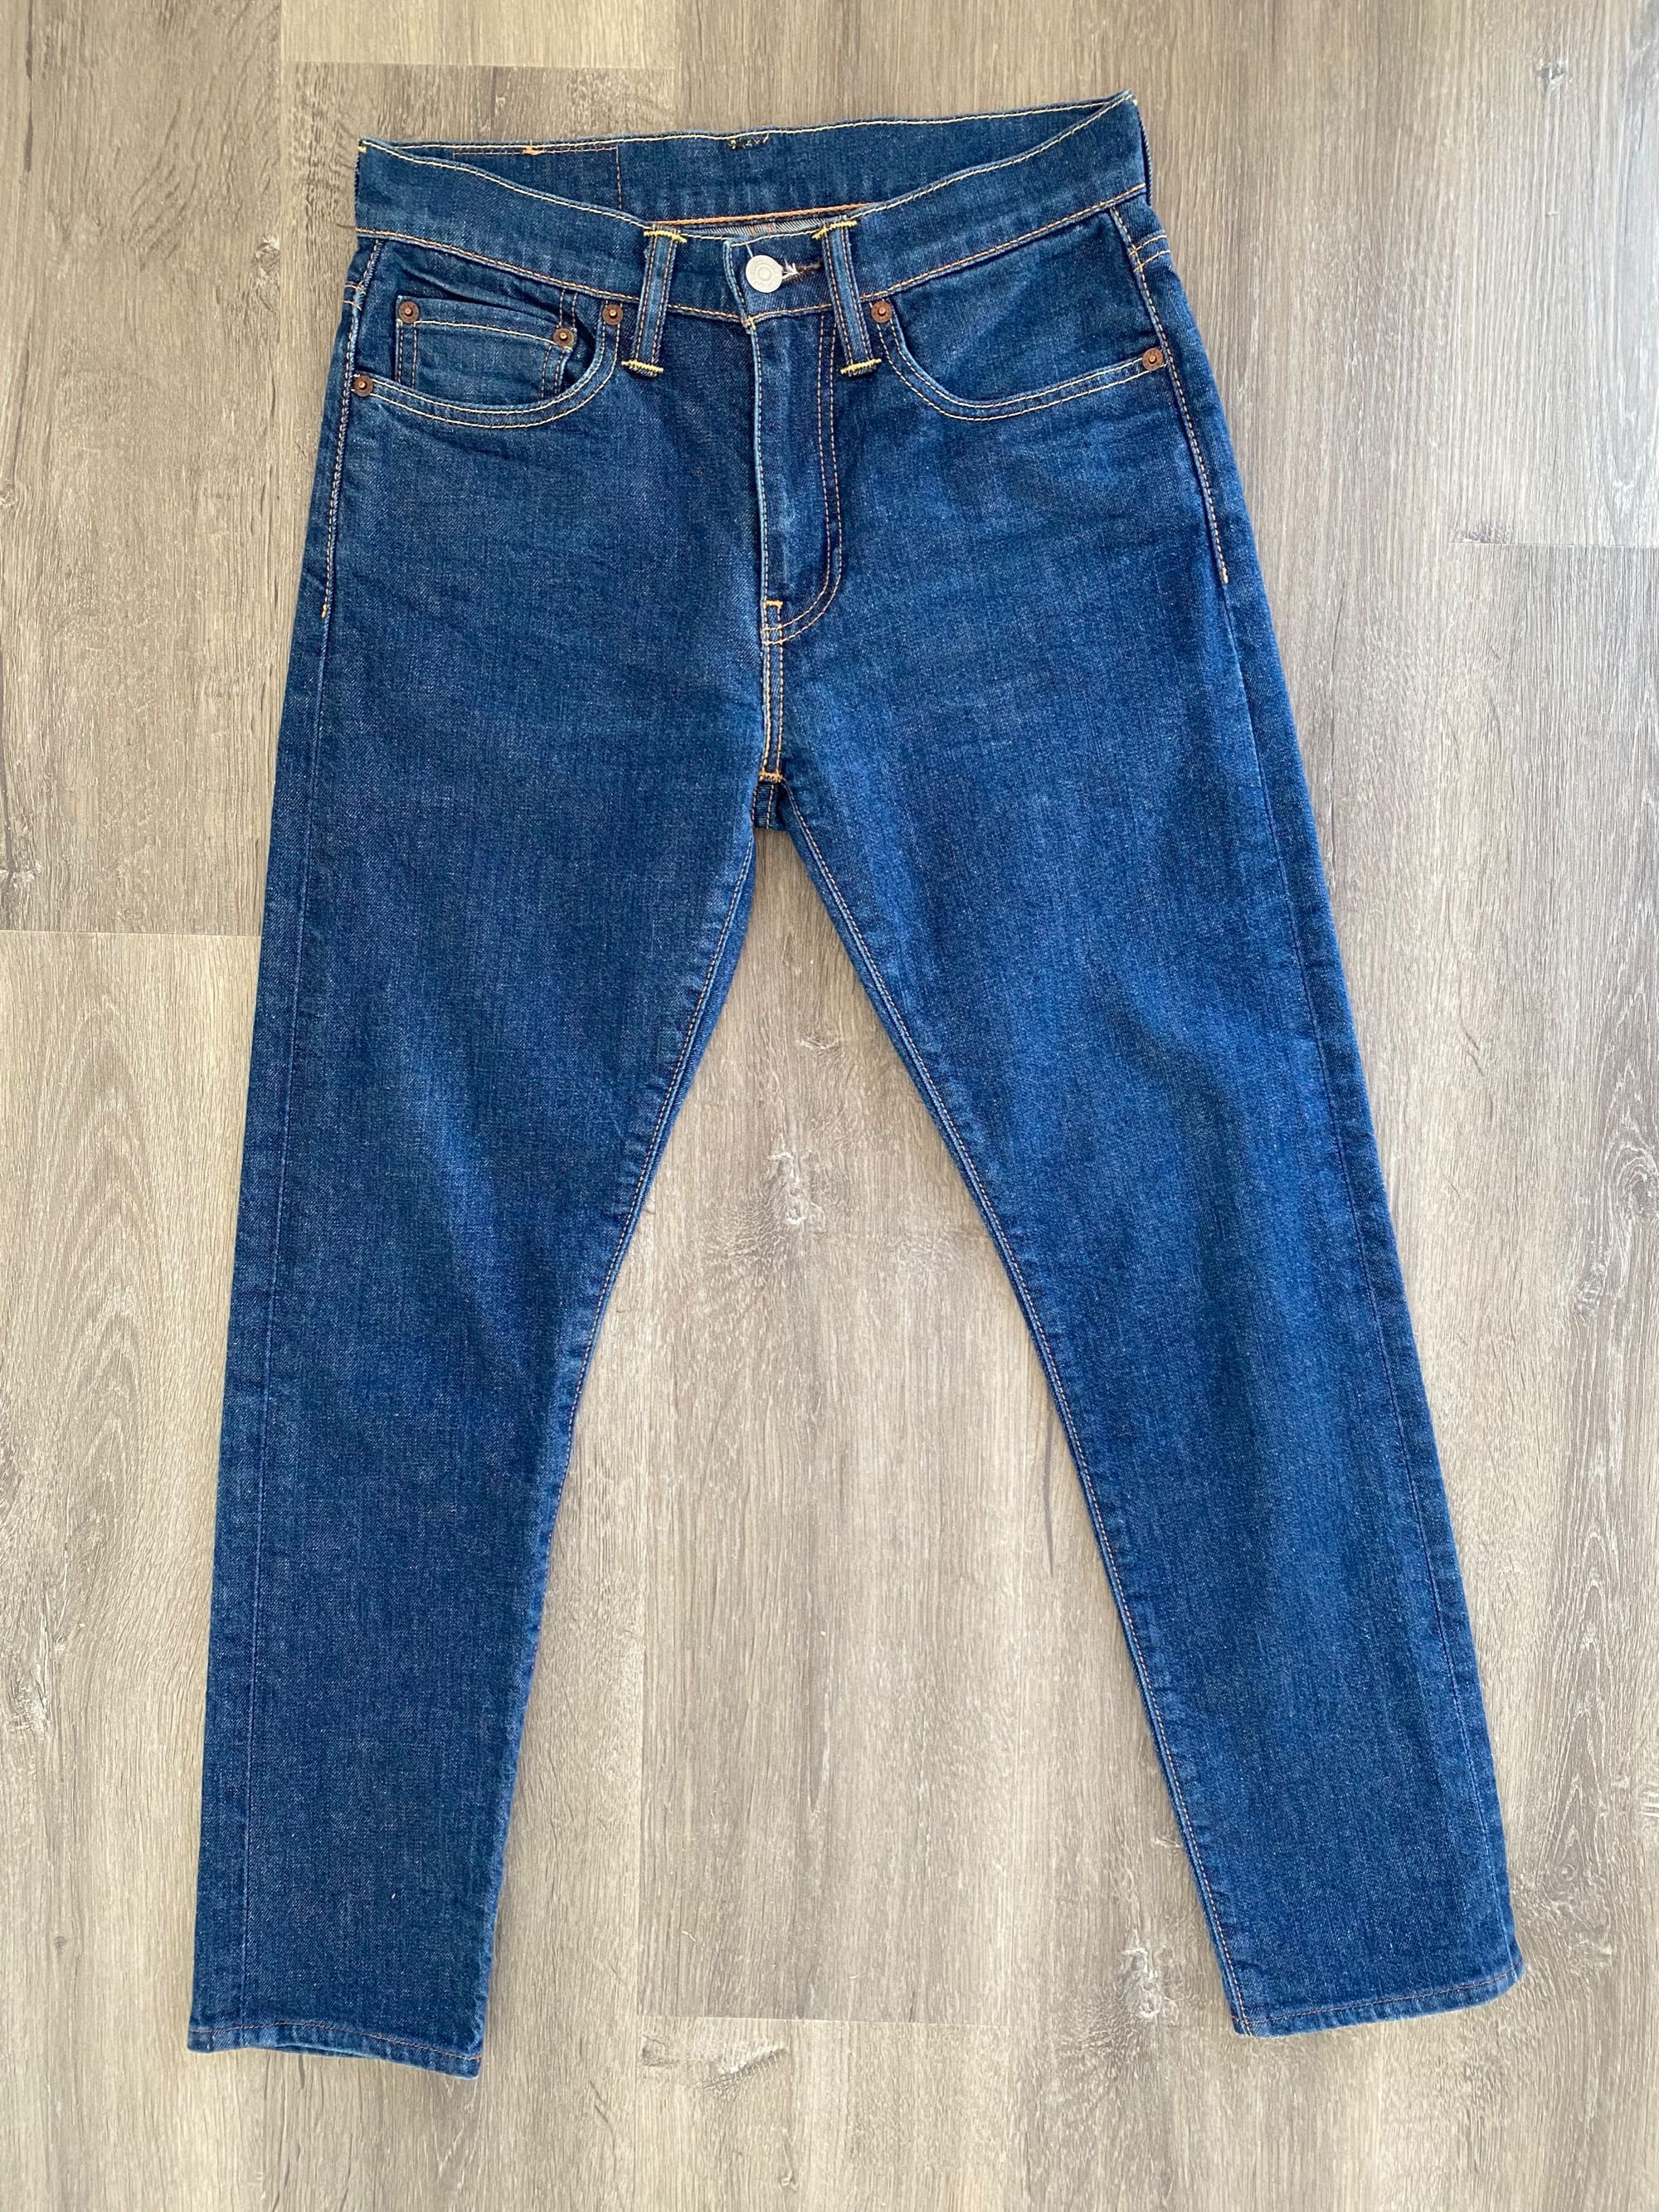 Levi's 512 Slim Taper Jeans - 28W